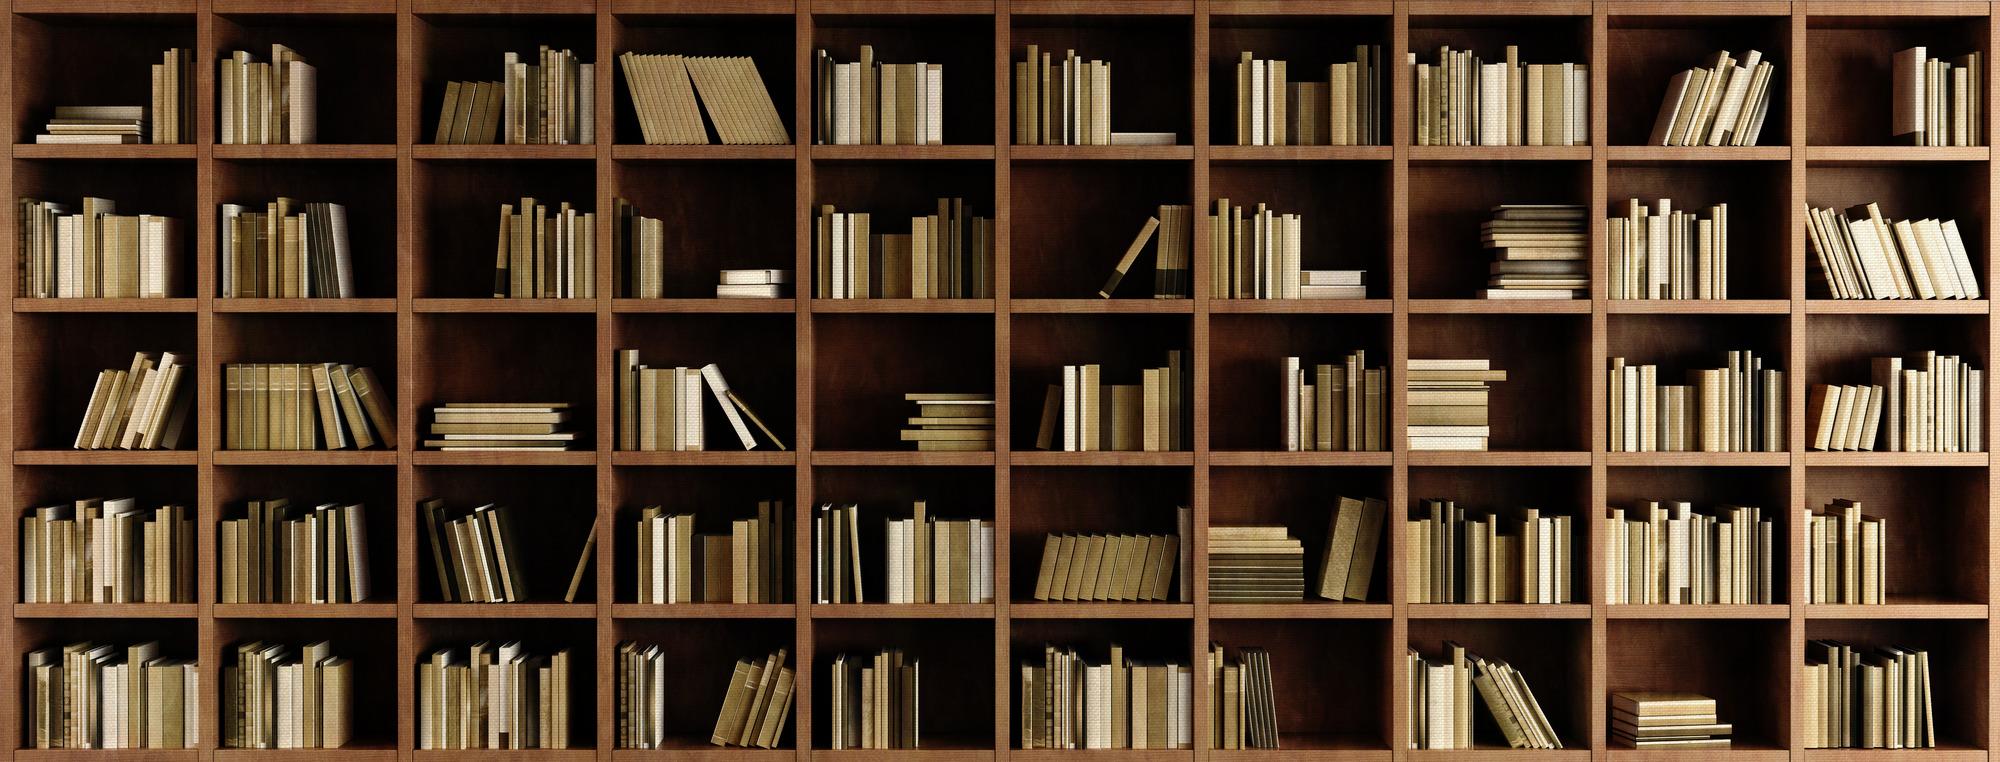 Wallpaper Bookshelf